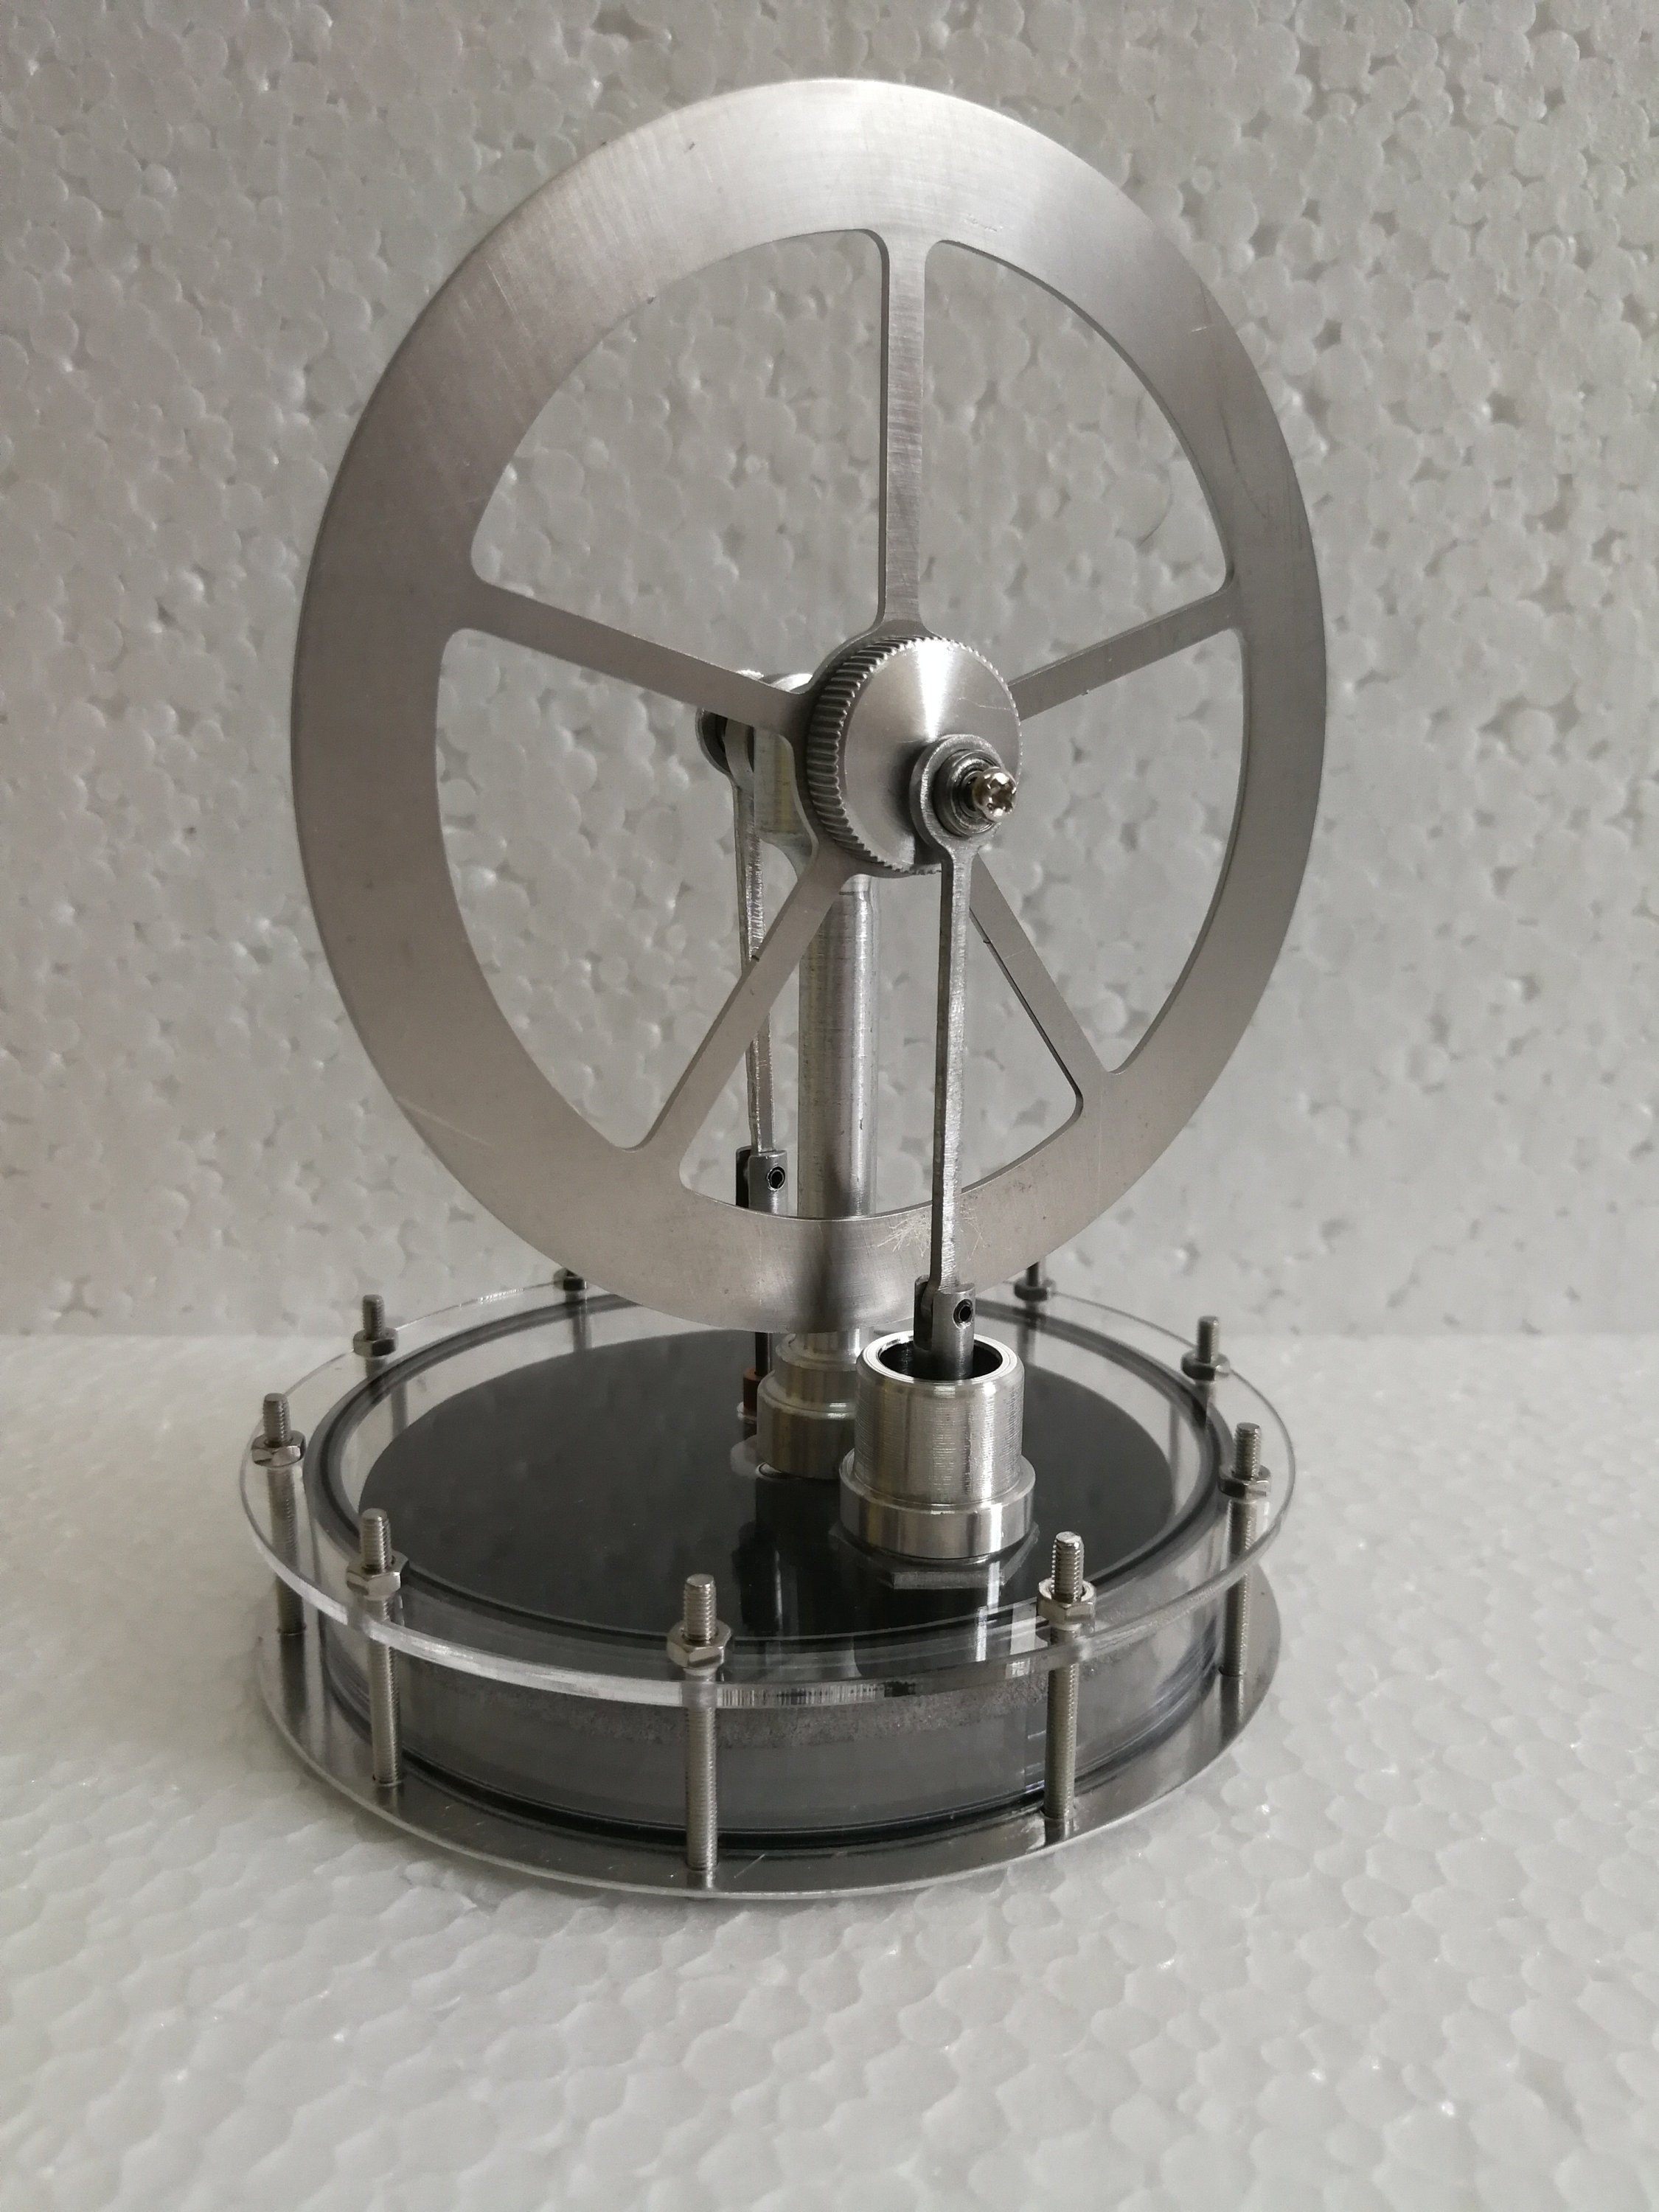 Moteur Stirling solaire mis Kits modèle moteur thermique externe à